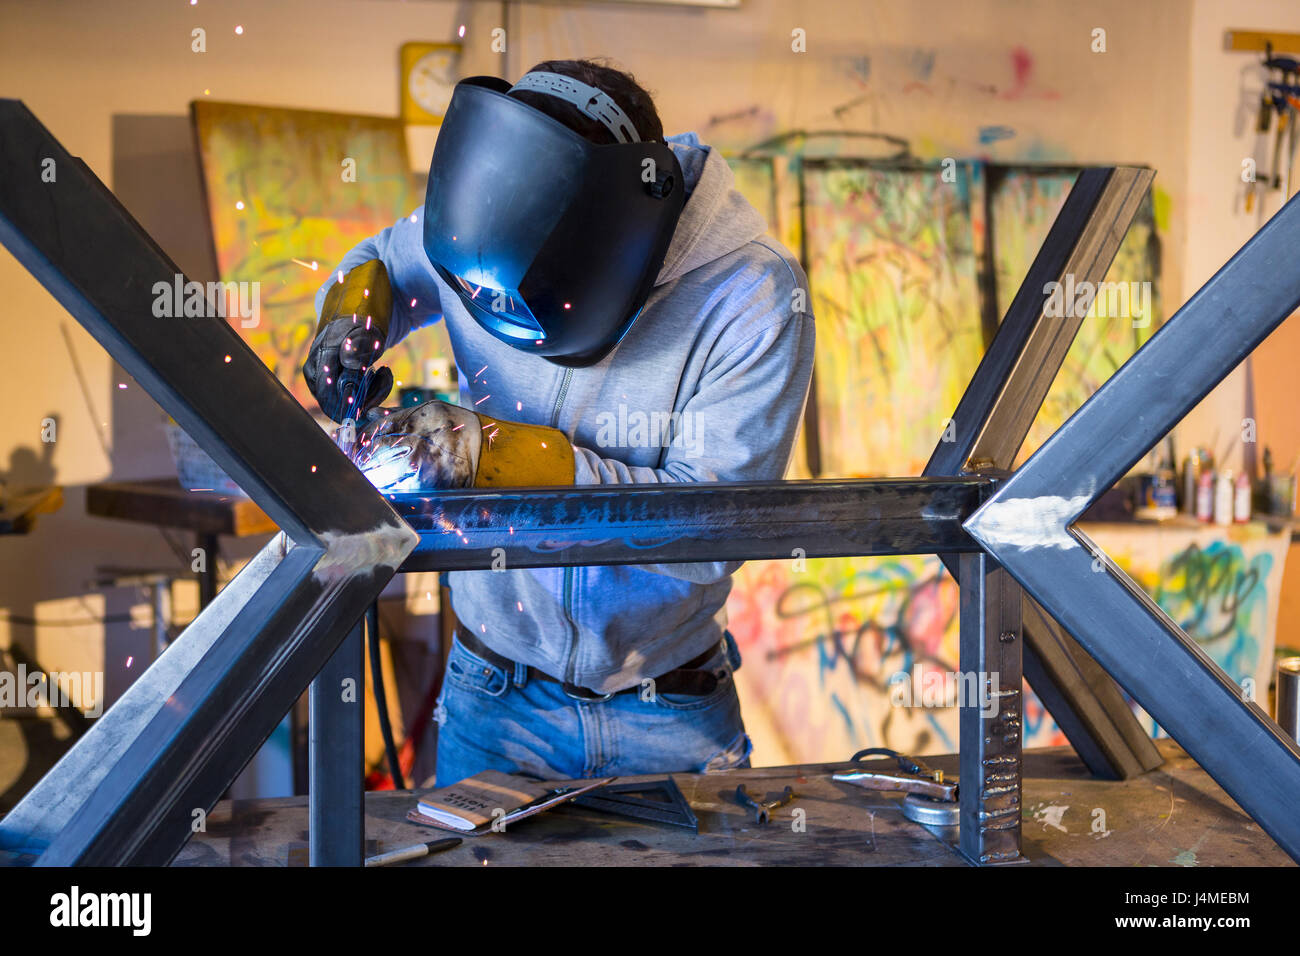 Caucasian man welding metal sculpture Stock Photo